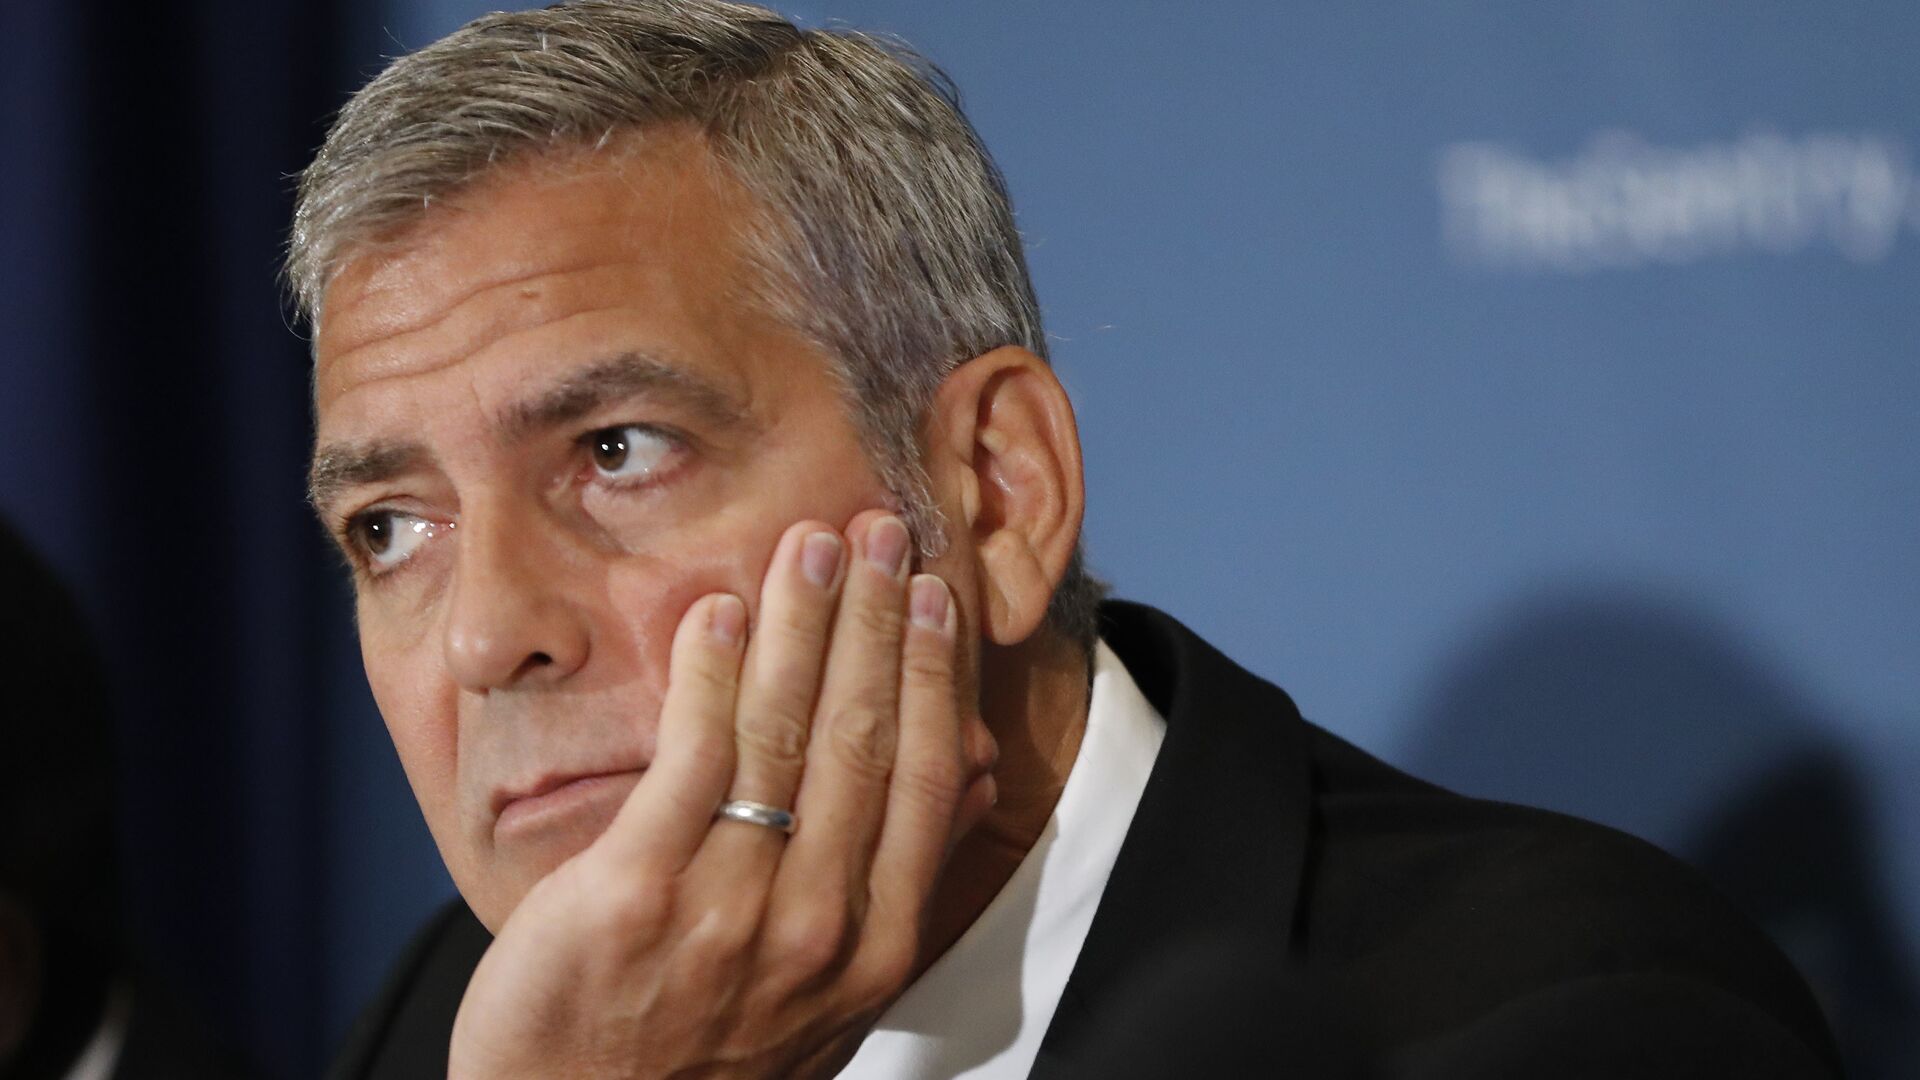 Американский актер Джордж Клуни во время пресс-конференции в Вашингтоне. 12 сентября 2016 года  - РИА Новости, 1920, 10.12.2020